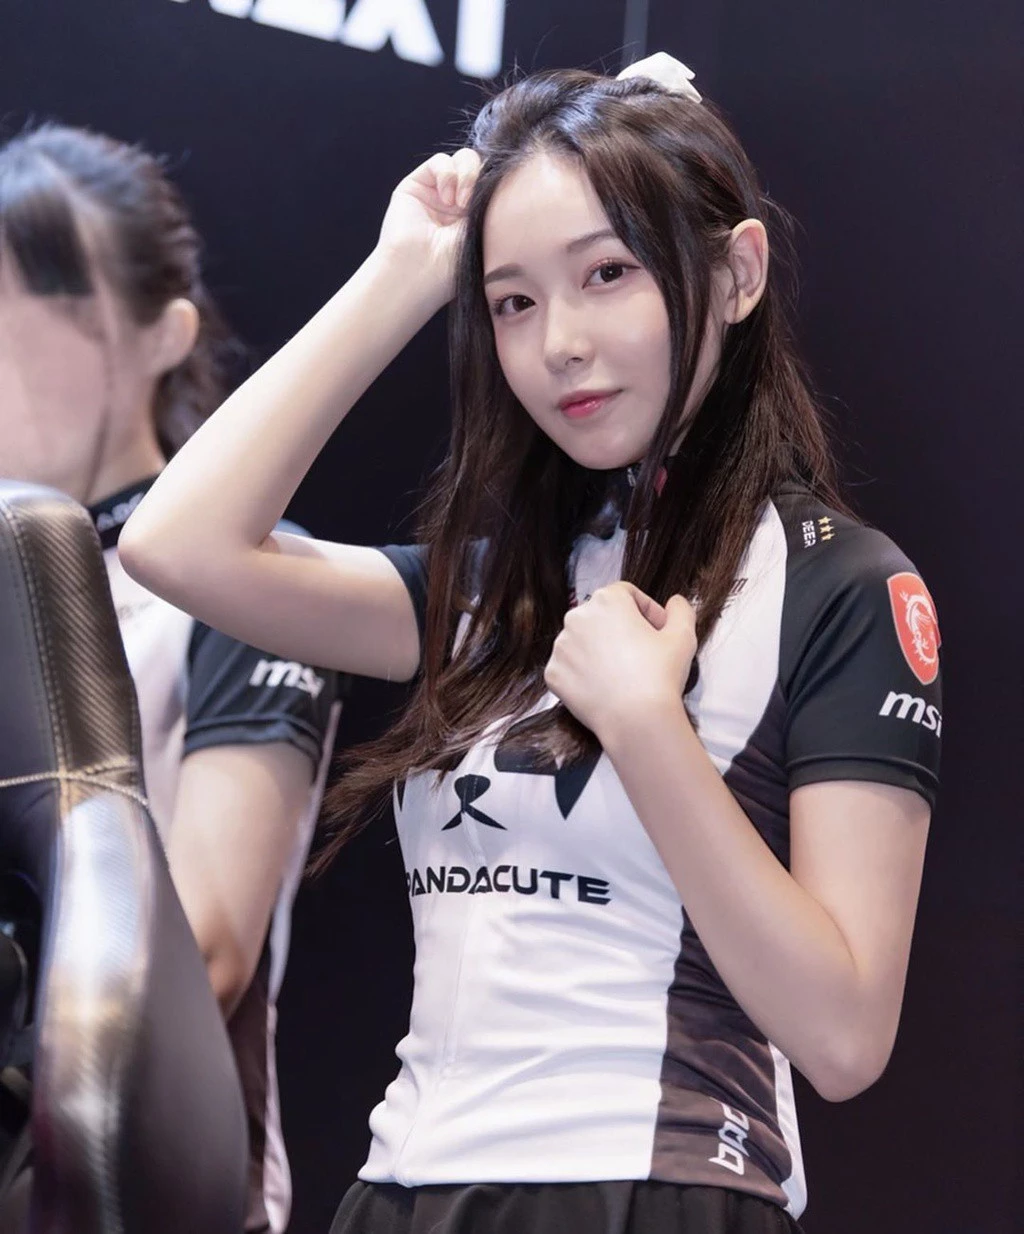 Deer Chann Lộc Nhi (22 tuổi) tên thật là Trần Gia Tĩnh là một nữ game thủ có tiếng tại Hong Kong và Trung Quốc. Năm 2017, cô nàng bắt đầu nổi tiếng nhờ gia nhập đội eSports tên Panda Cute của trò Liên minh huyền thoại (LOL).